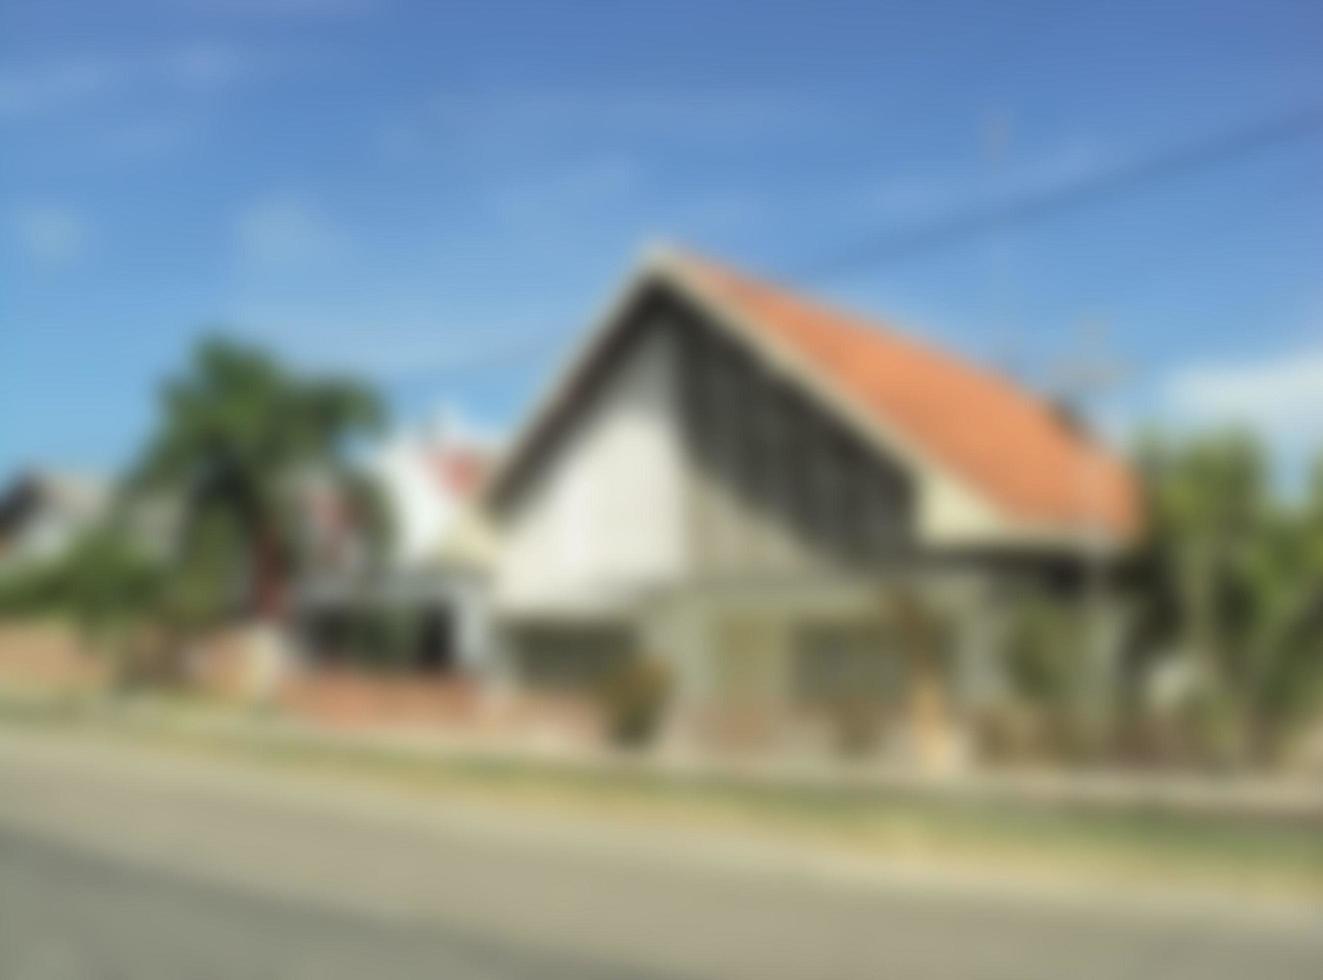 Defokussierter abstrakter Hintergrund eines Hauses mit Jengki-Architektur. typische indonesische architektur, die indonesische unabhängigkeit symbolisiert. antike architektur in der gegend von pragaan foto